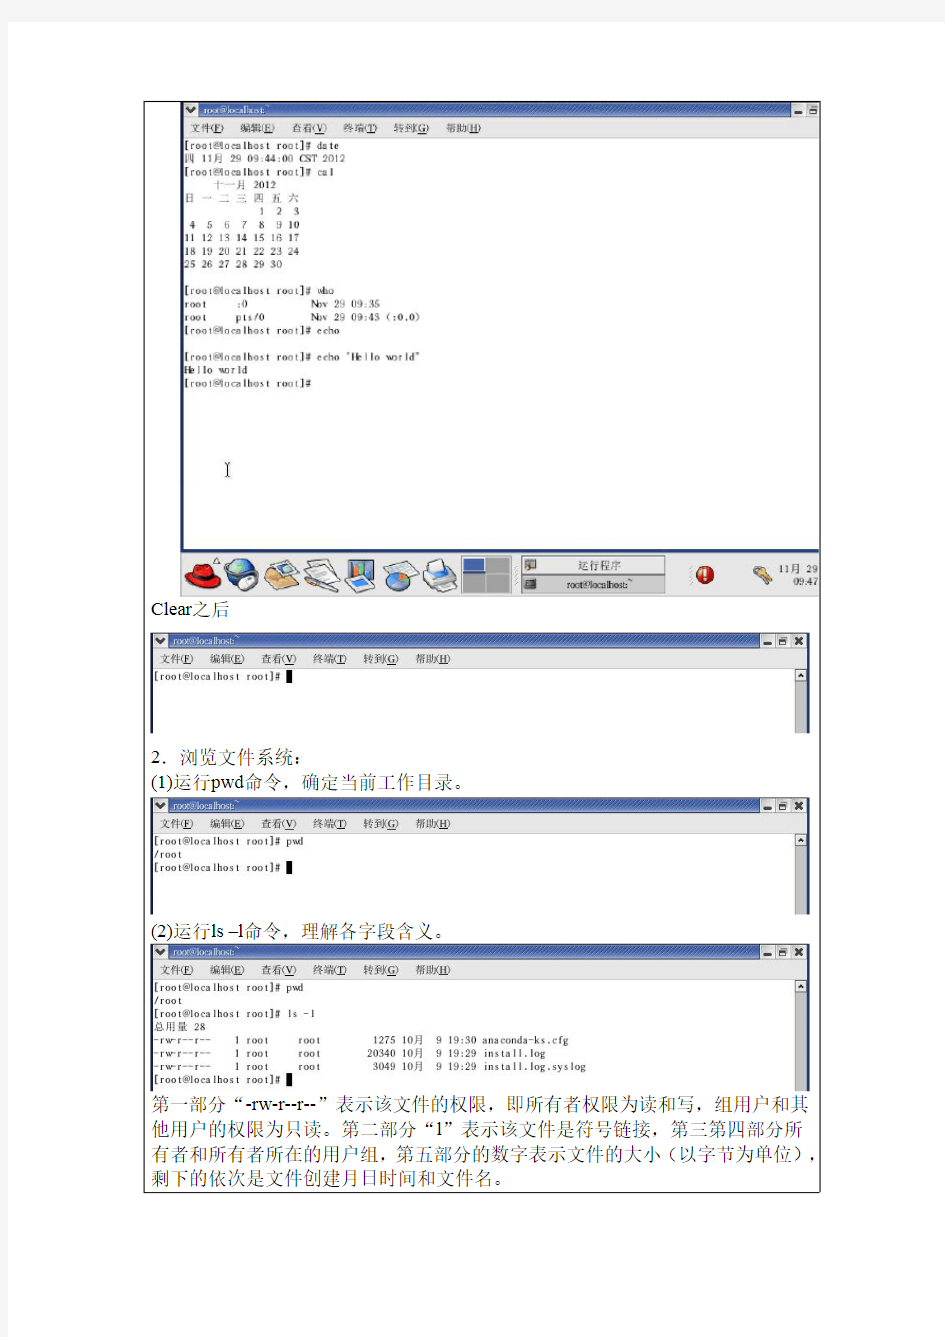 操作系统实验报告 LINUX基本命令使用和VI编辑器